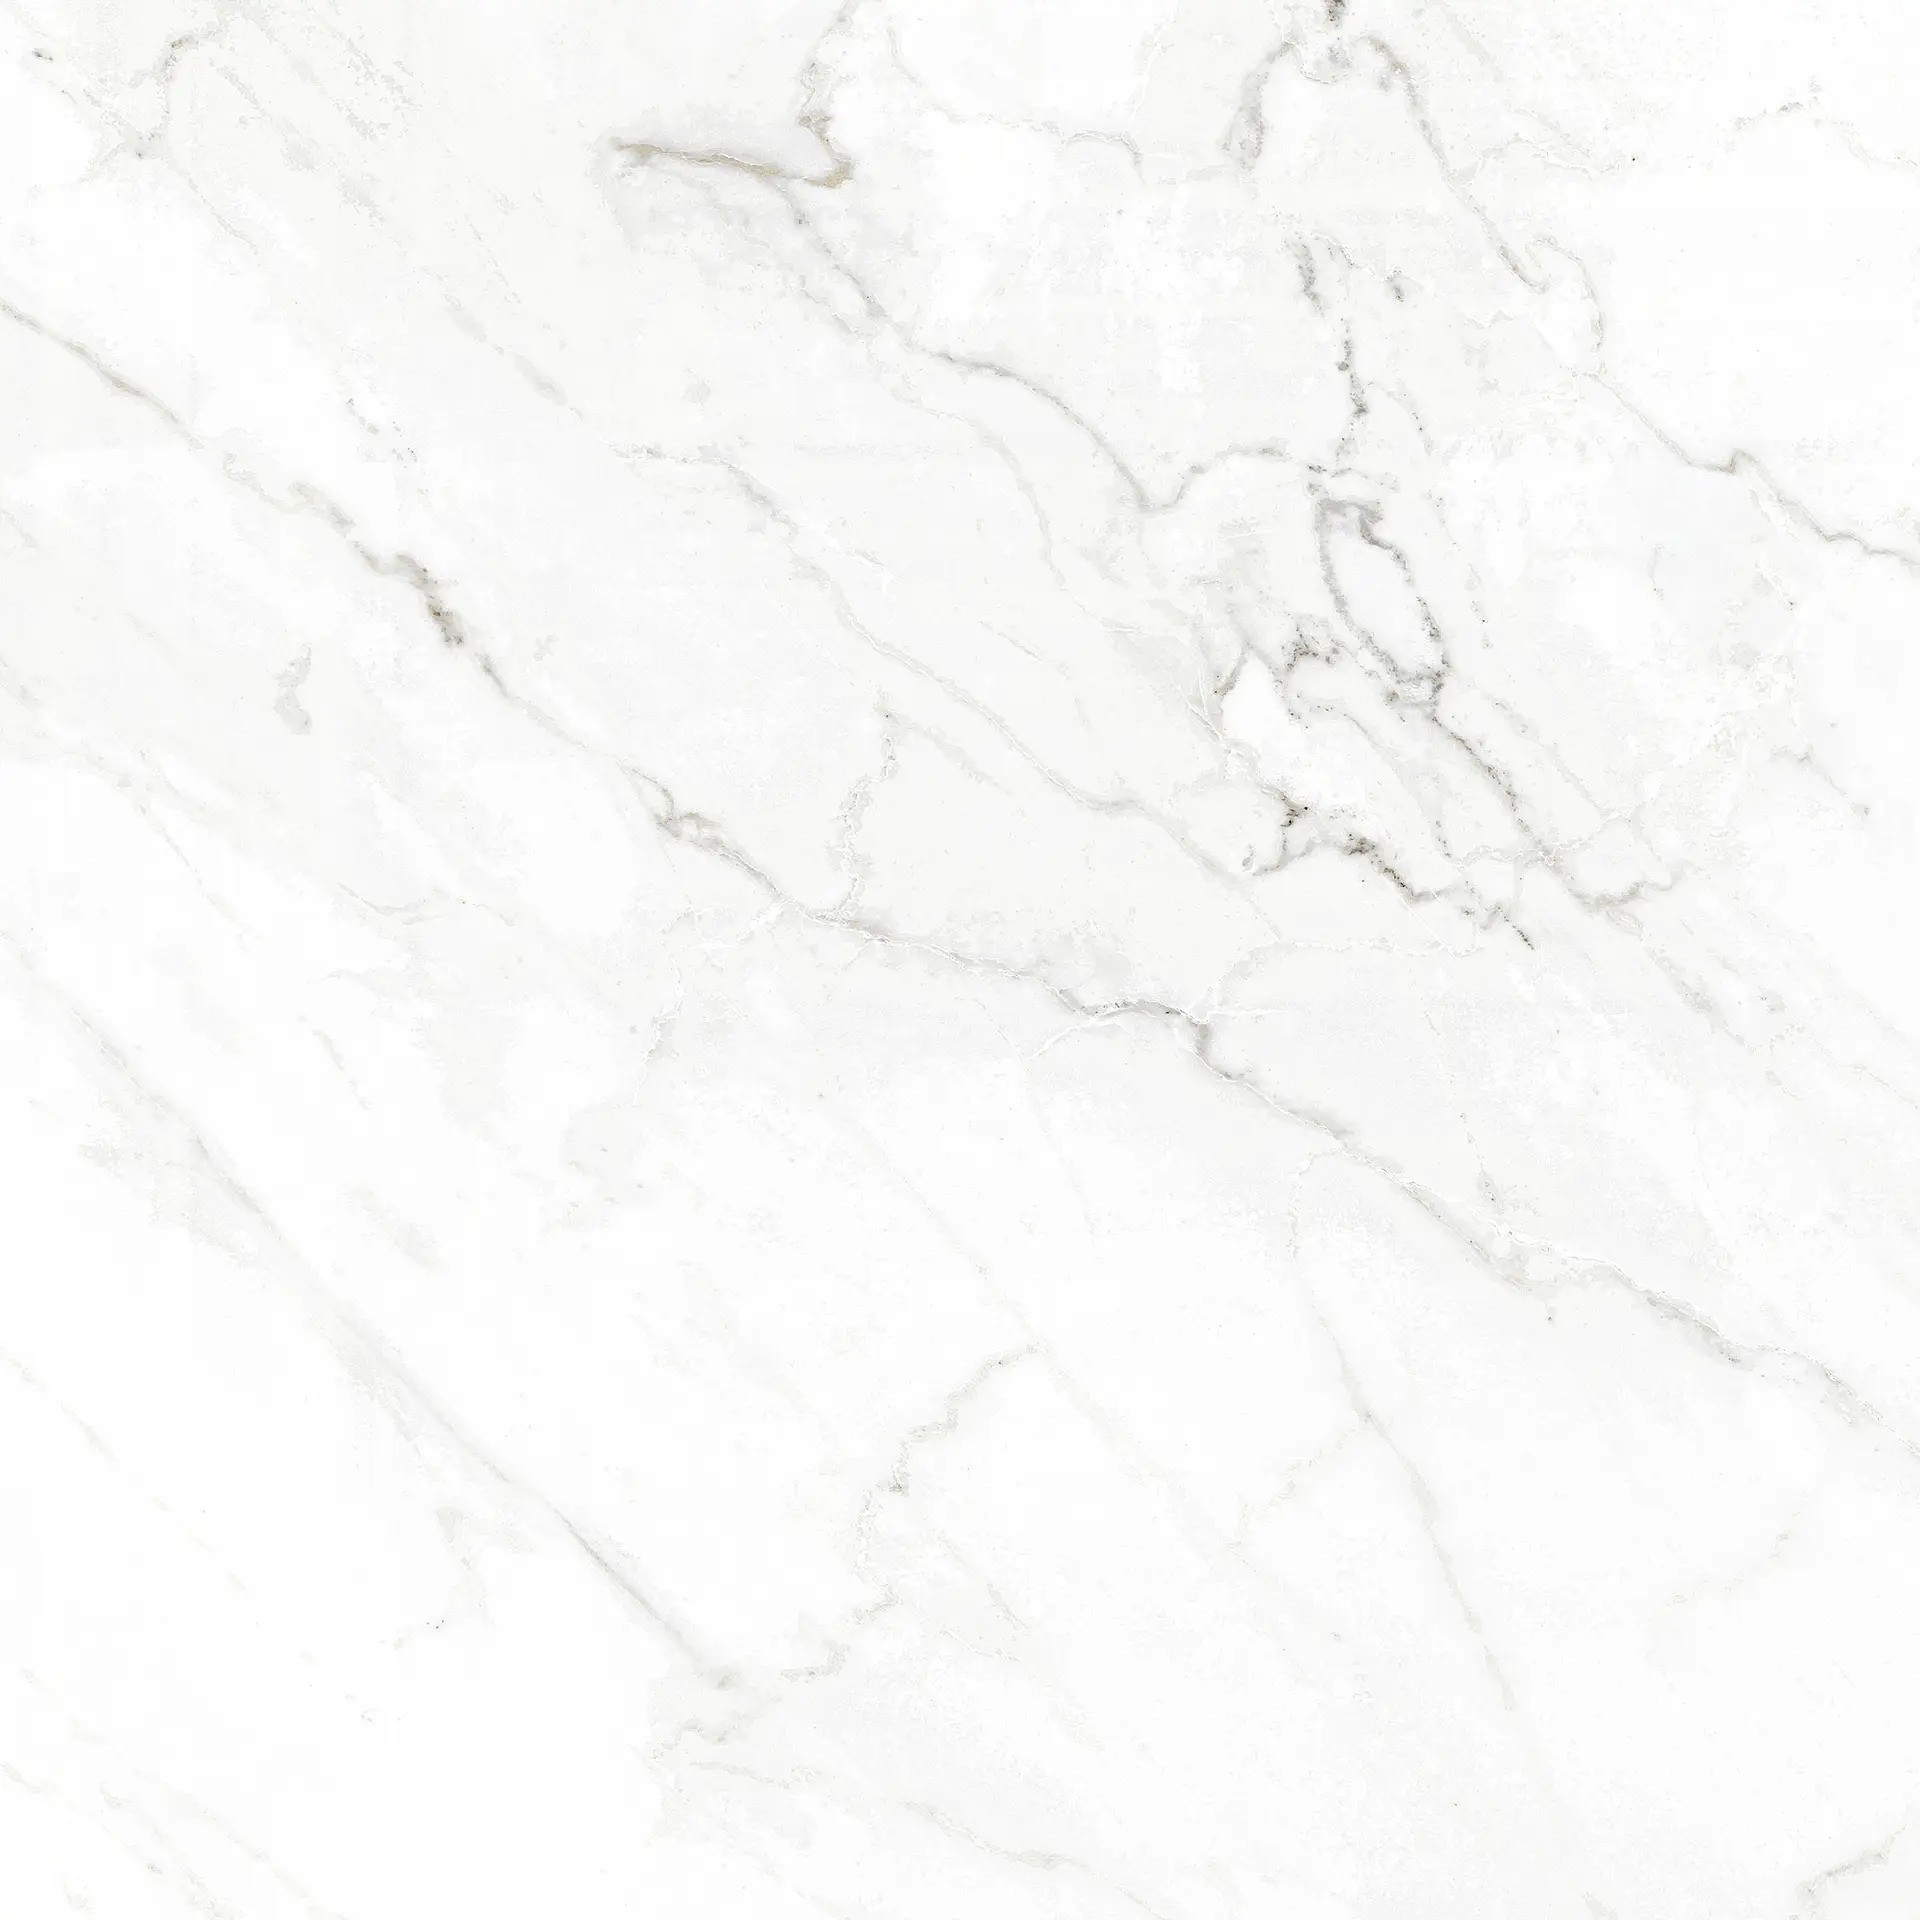 Carrelage Aspect marbre Marbella blanc nagoya 80x80 cm